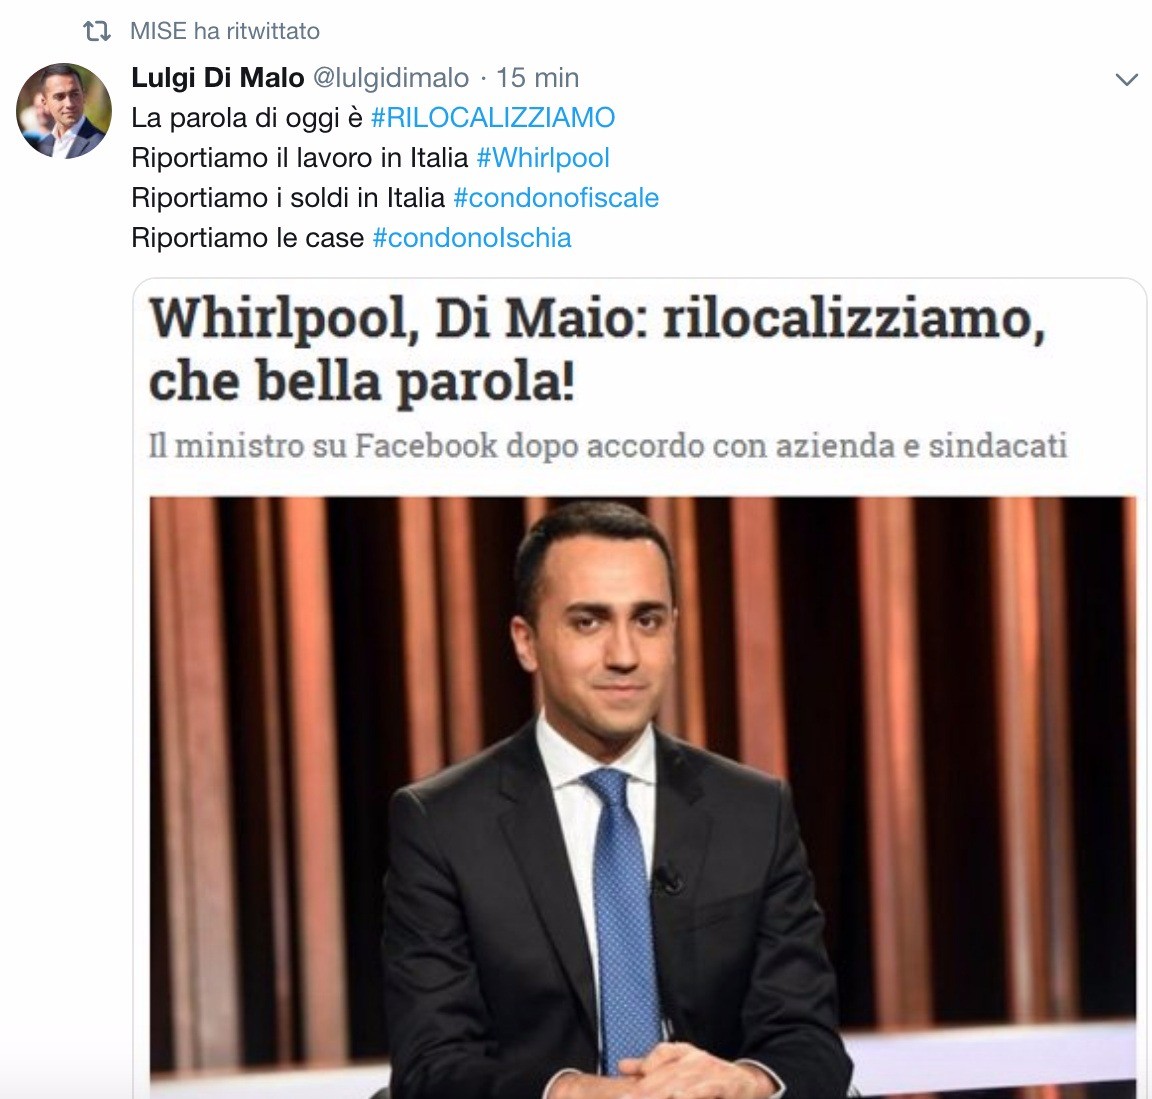 L’epic fail del Mise: ritwitta il fake di Luigi Di Maio